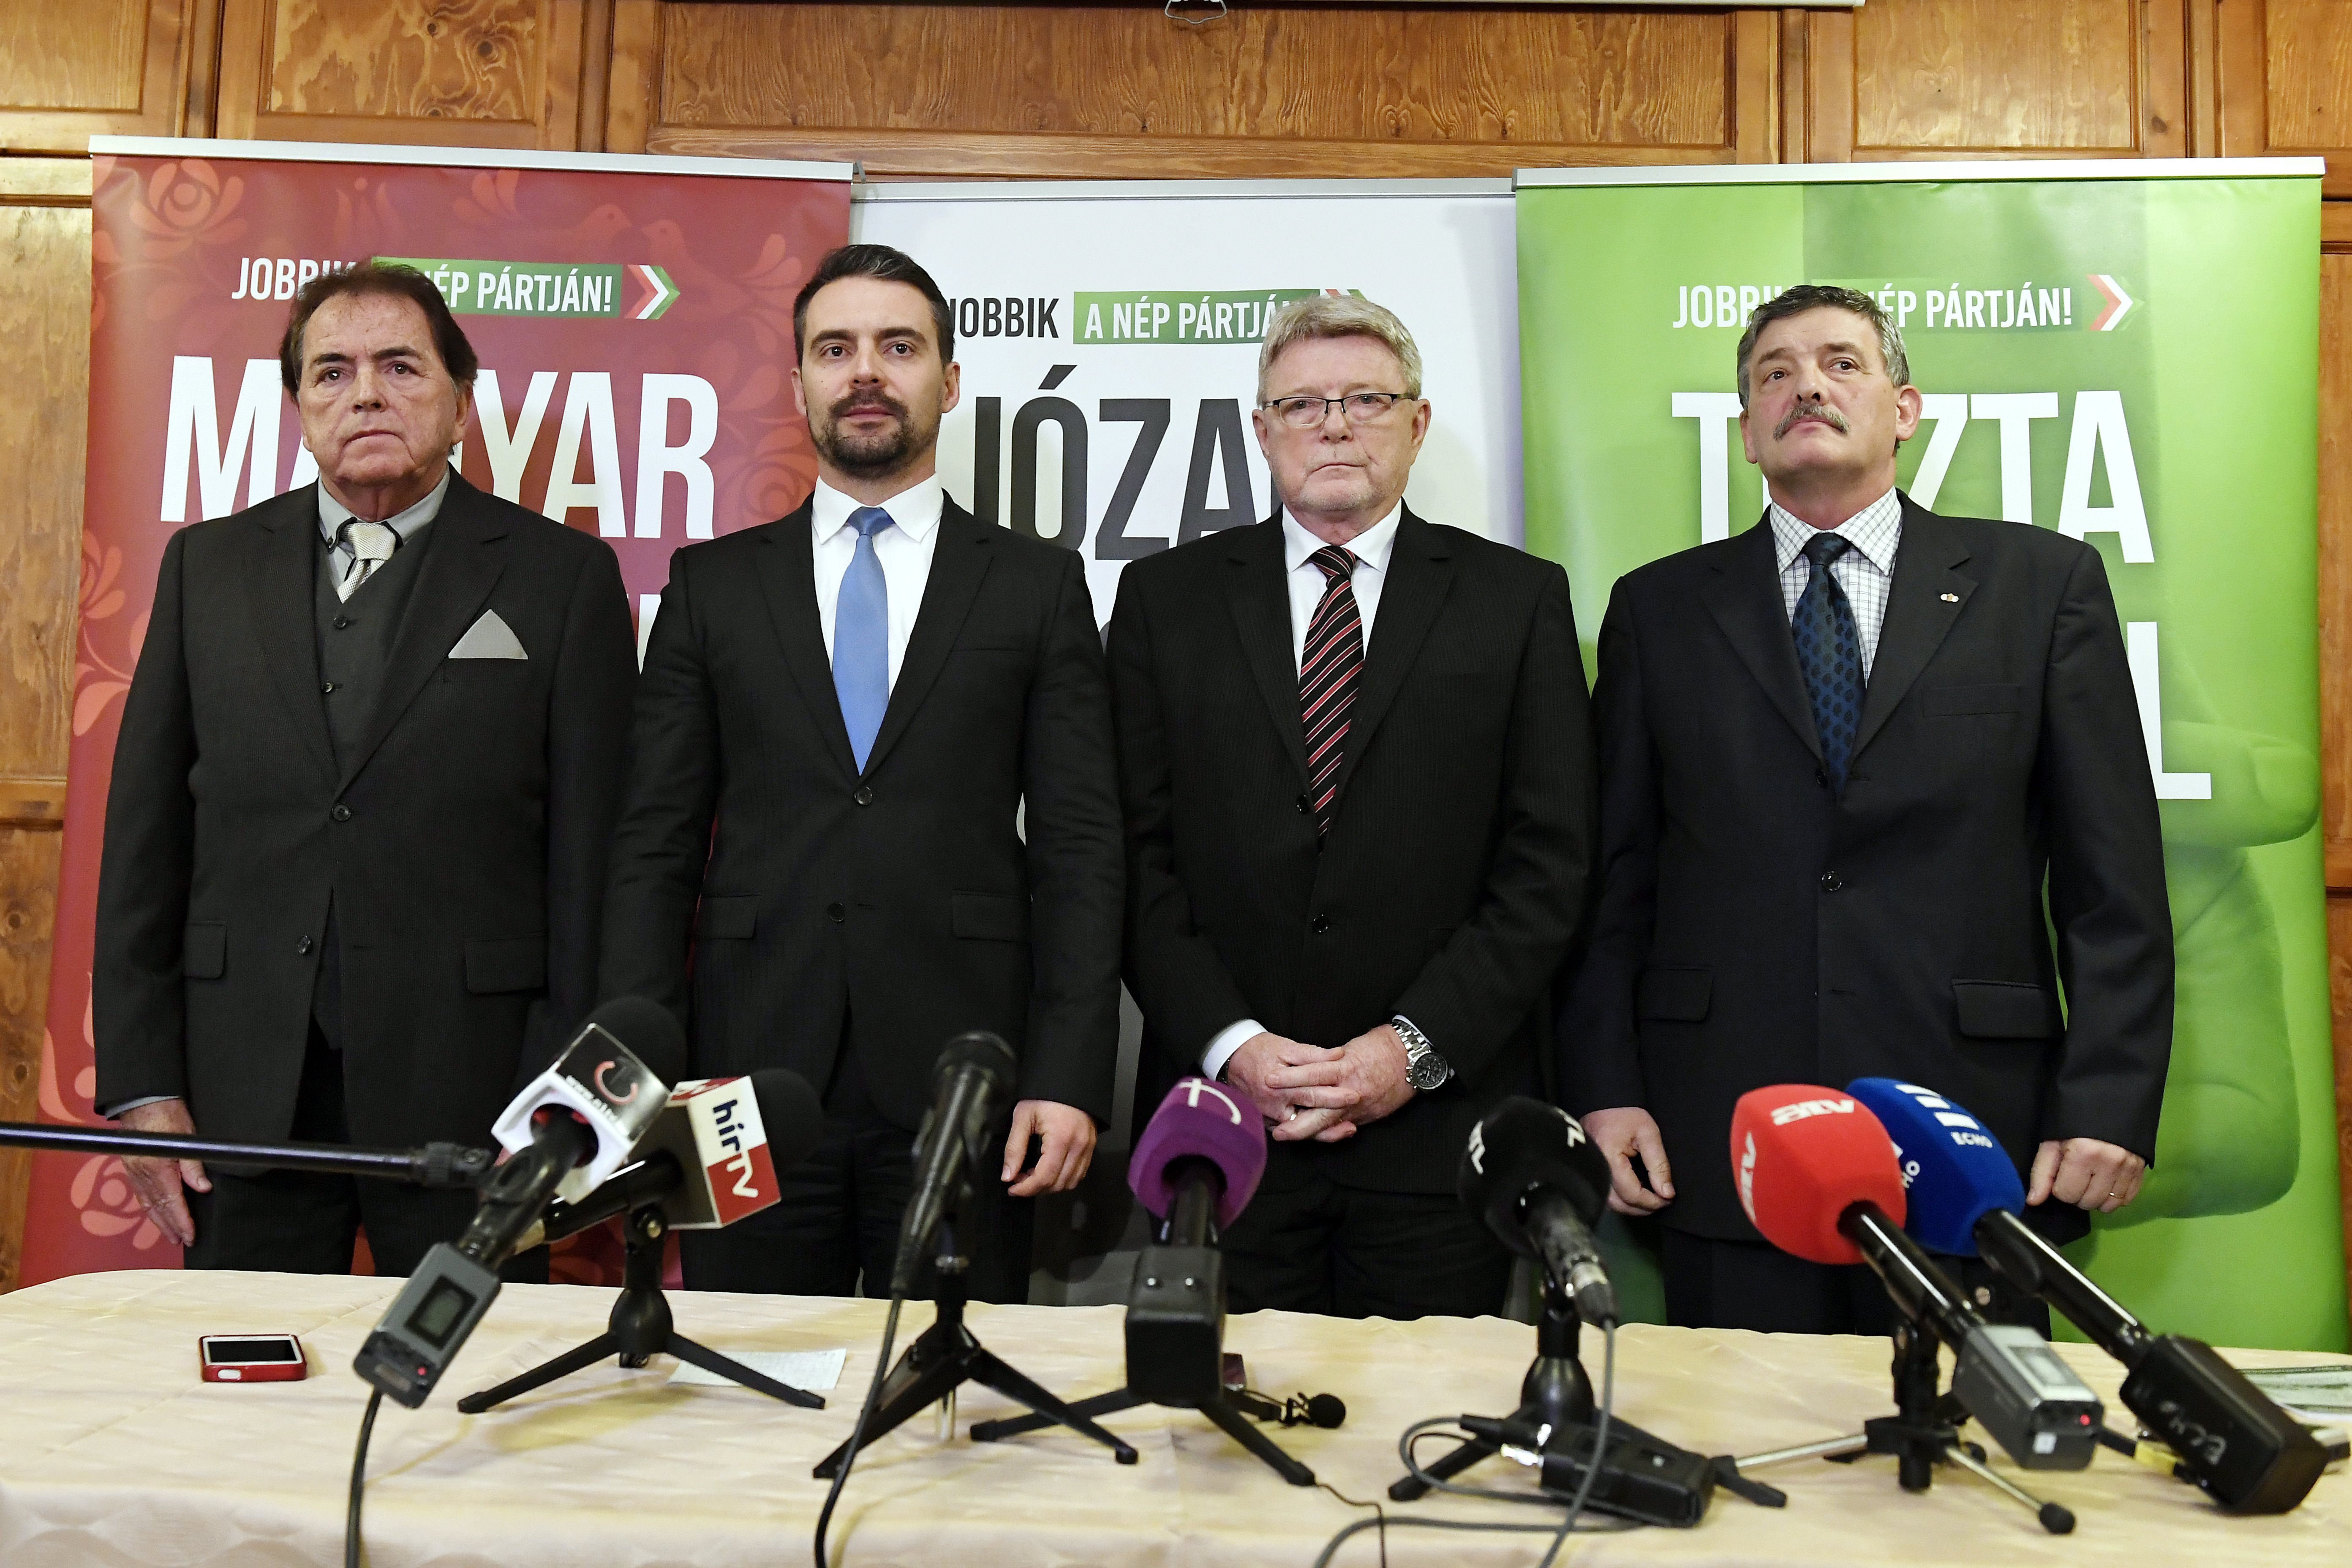 Jobbik: Semmilyen együttműködés nem képzelhető el az MSZP-vel, és nem tárgyalunk más pártokkal sem